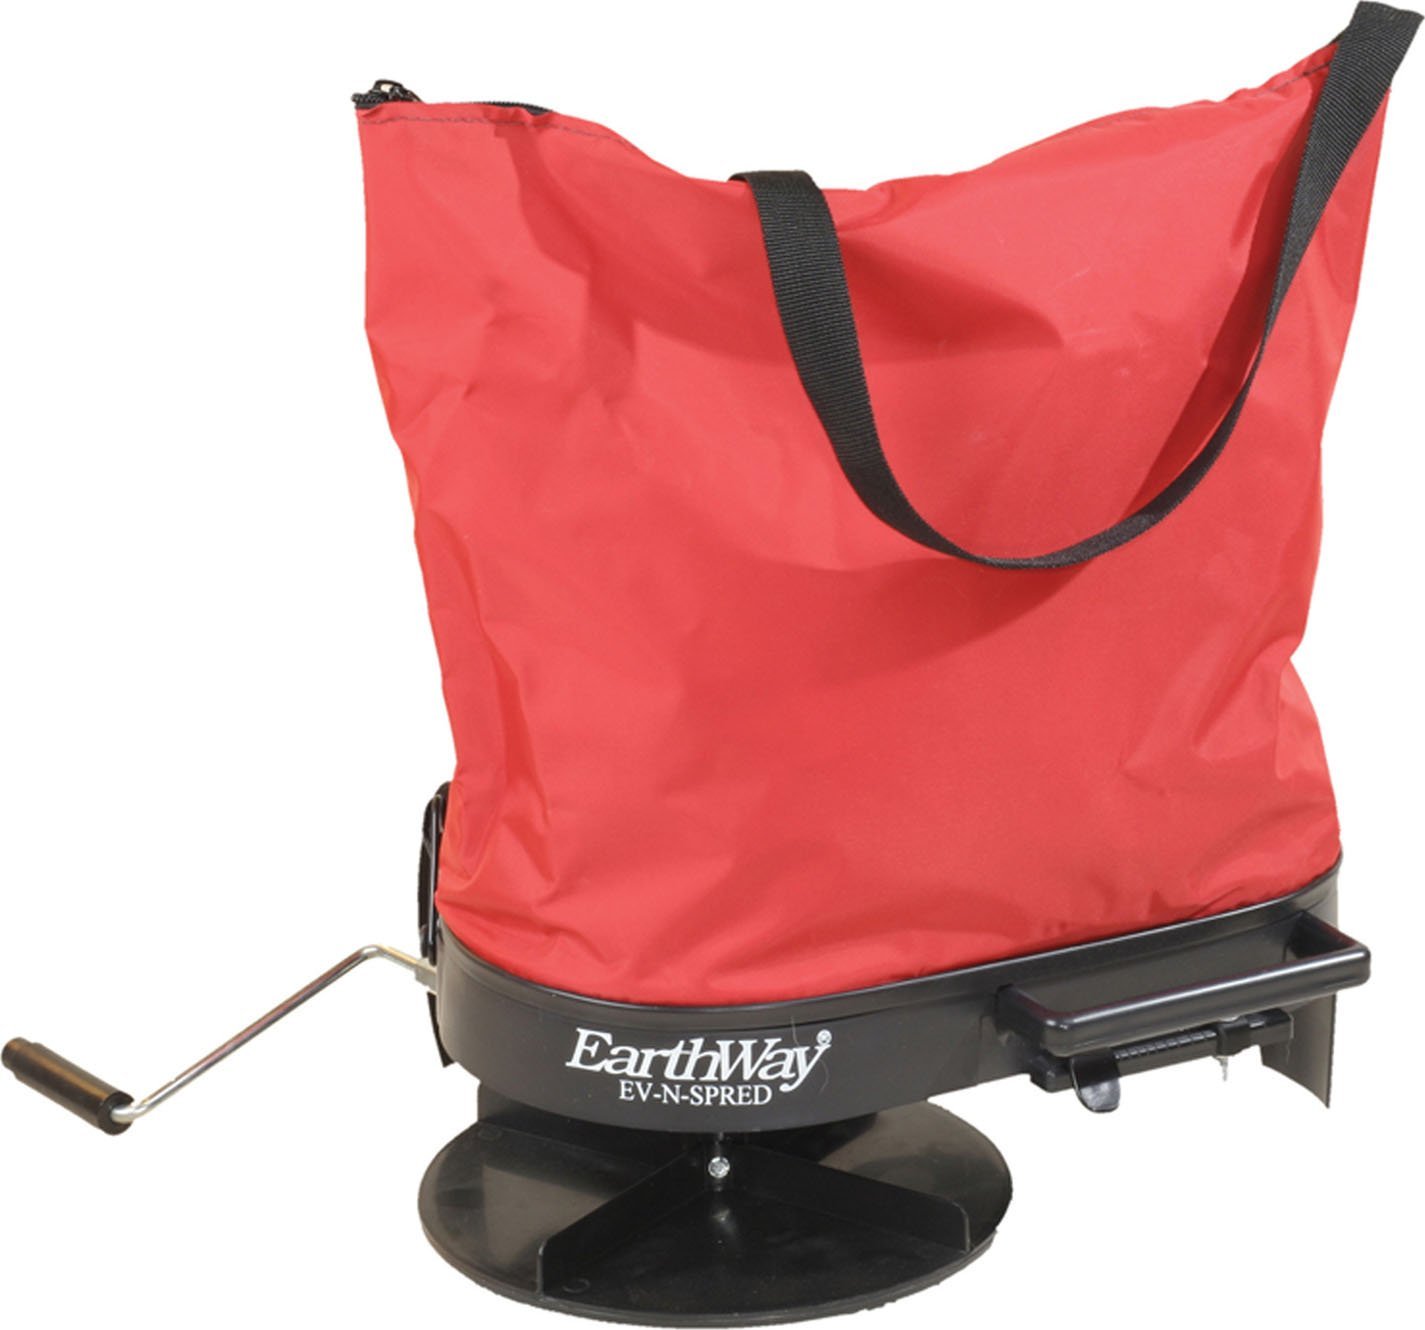 Earthway 2750 Bag Seeder/Spreader - 25lb